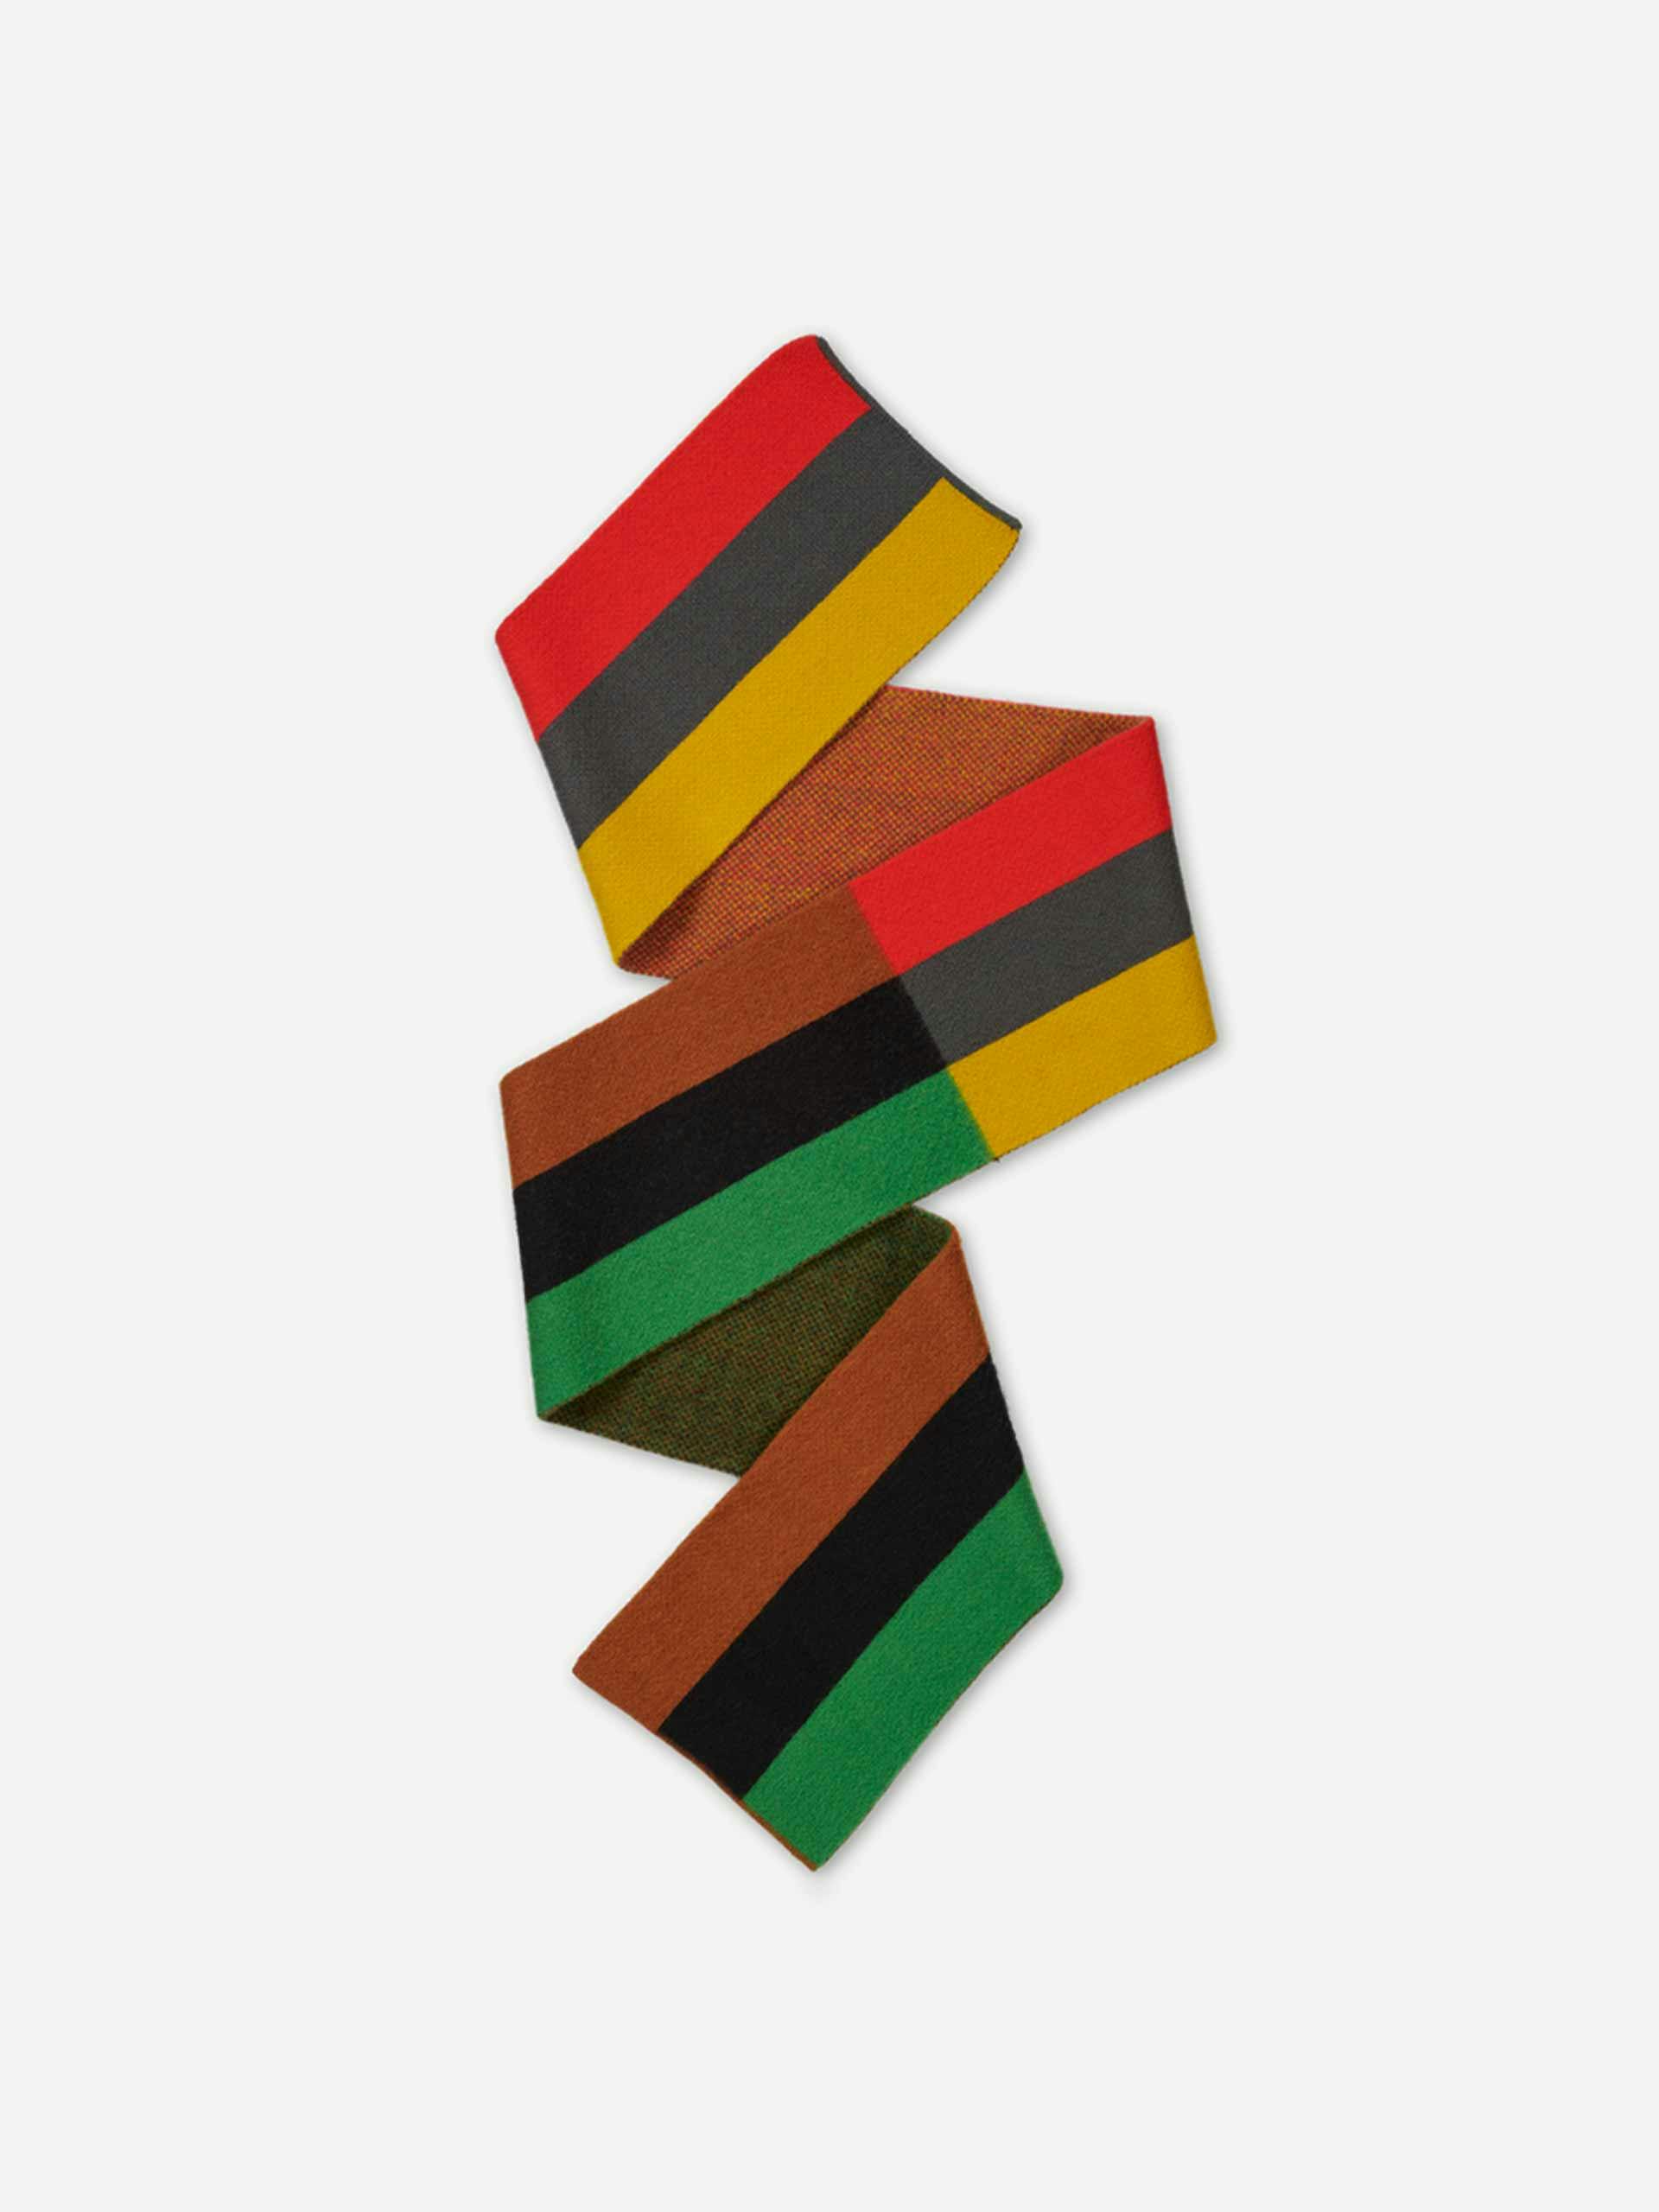 Vertical stripe scarf in Poppy